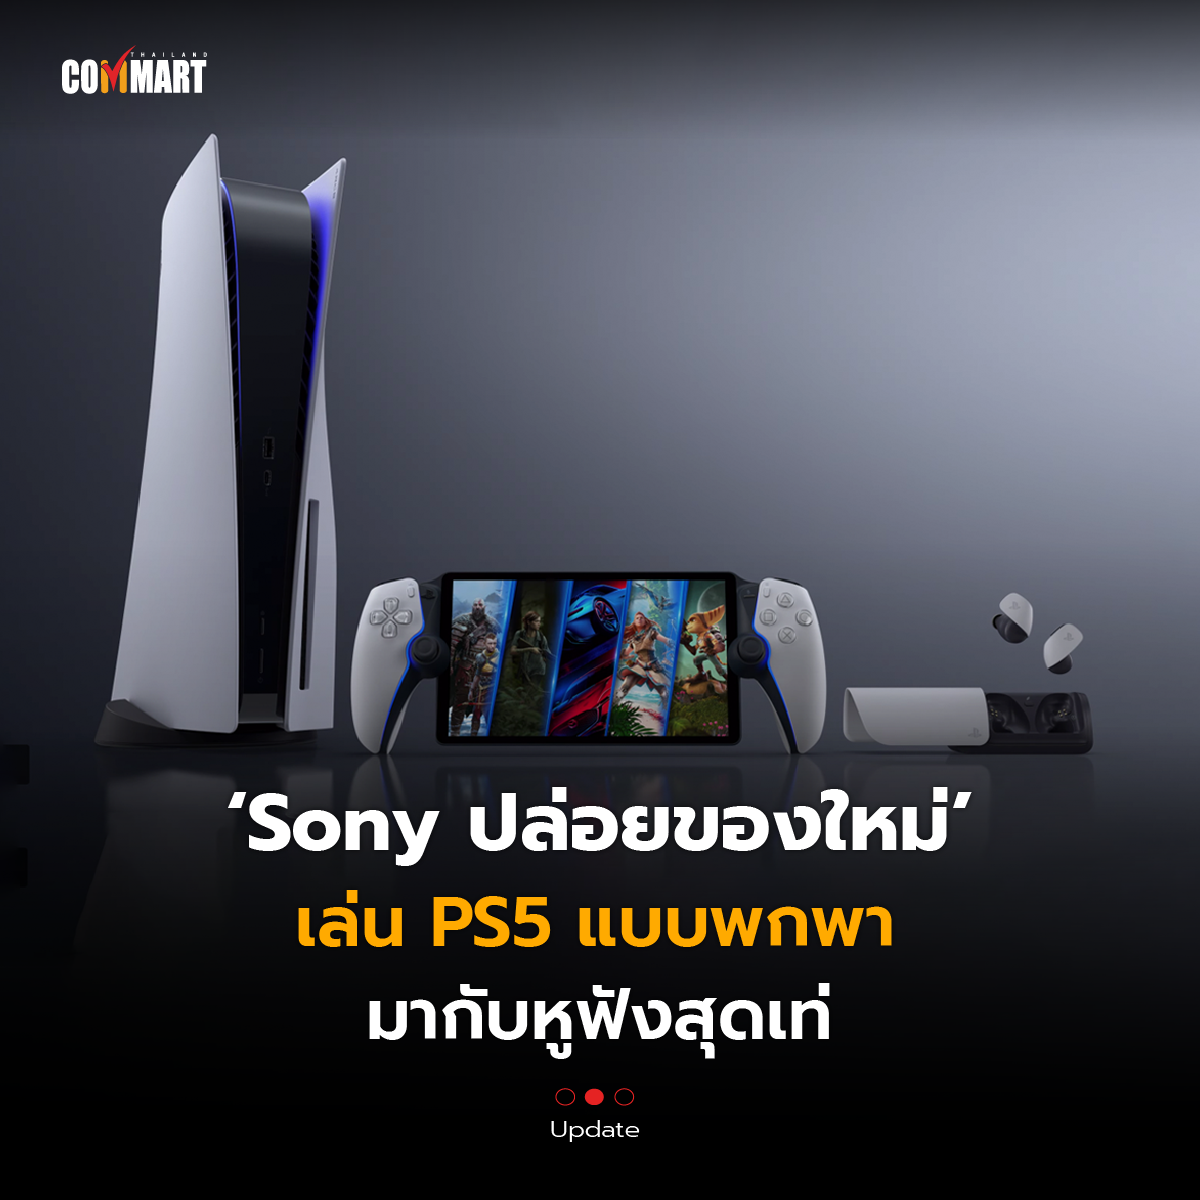 Sony ปล่อยของใหม่ เล่น PS5 แบบพกพา มากับหูฟังสุดเท่